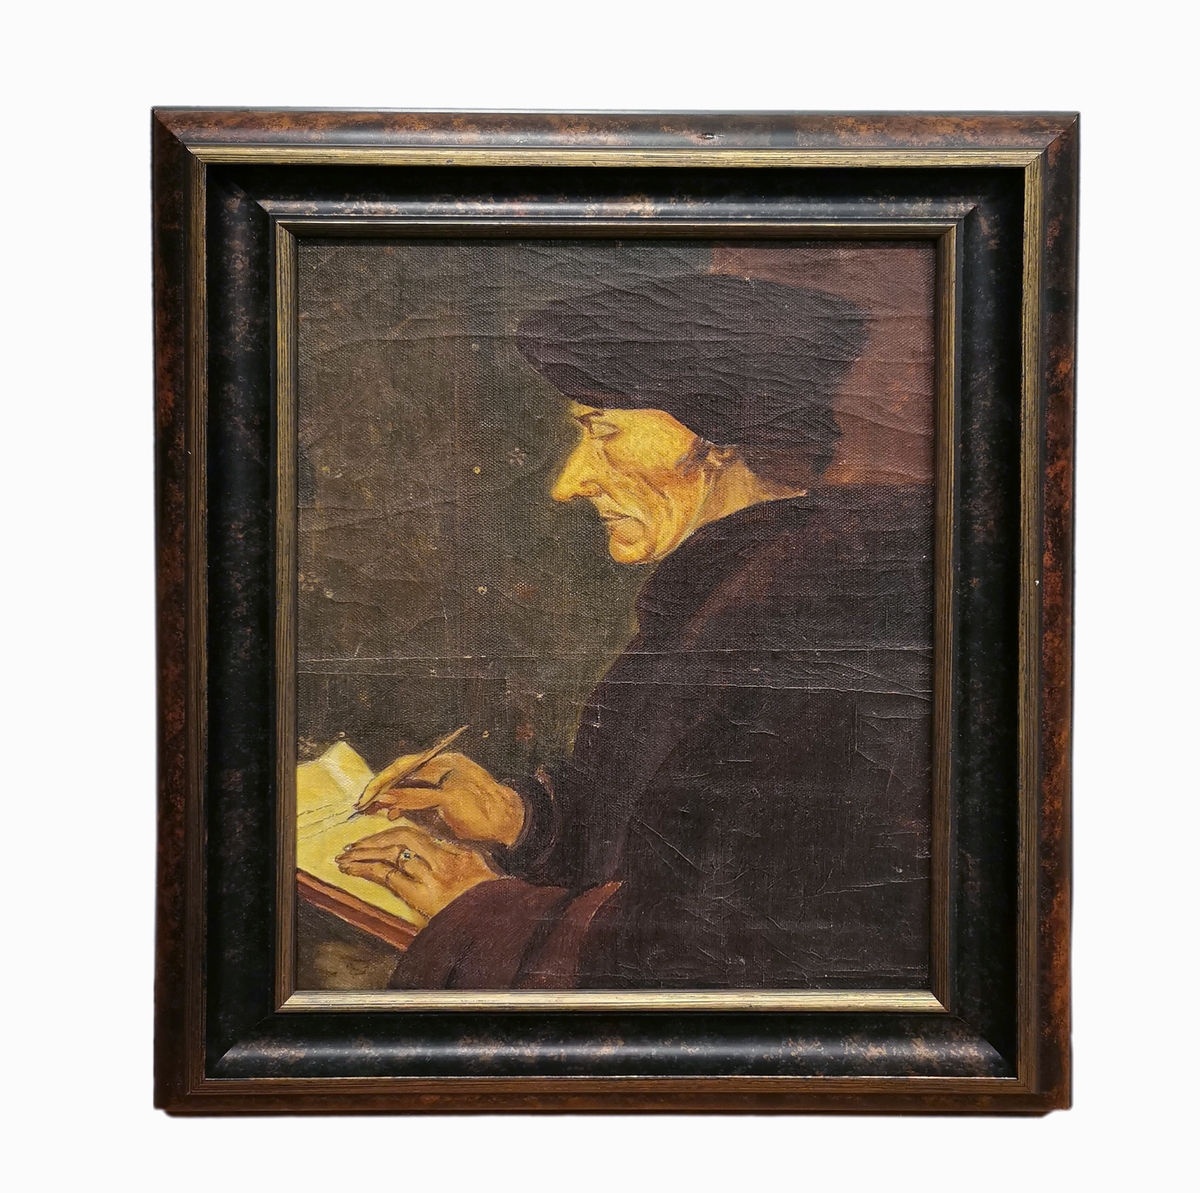 Maleriet er en kopi av et motiv av Hans Holbein den yngre (1497-1543). Holbein malte flere versjoner av dette motivet, og flere kunstnere har gjort egne kopier og versjoner av Holbeis malerier.

Motivet viser Desiderius Erasmus Roterodamus eller Erasmus av Rotterdam (1566-1536). Erasmus var en nederlandsk teolog, og en av renessanse-humanismens ledende personer.